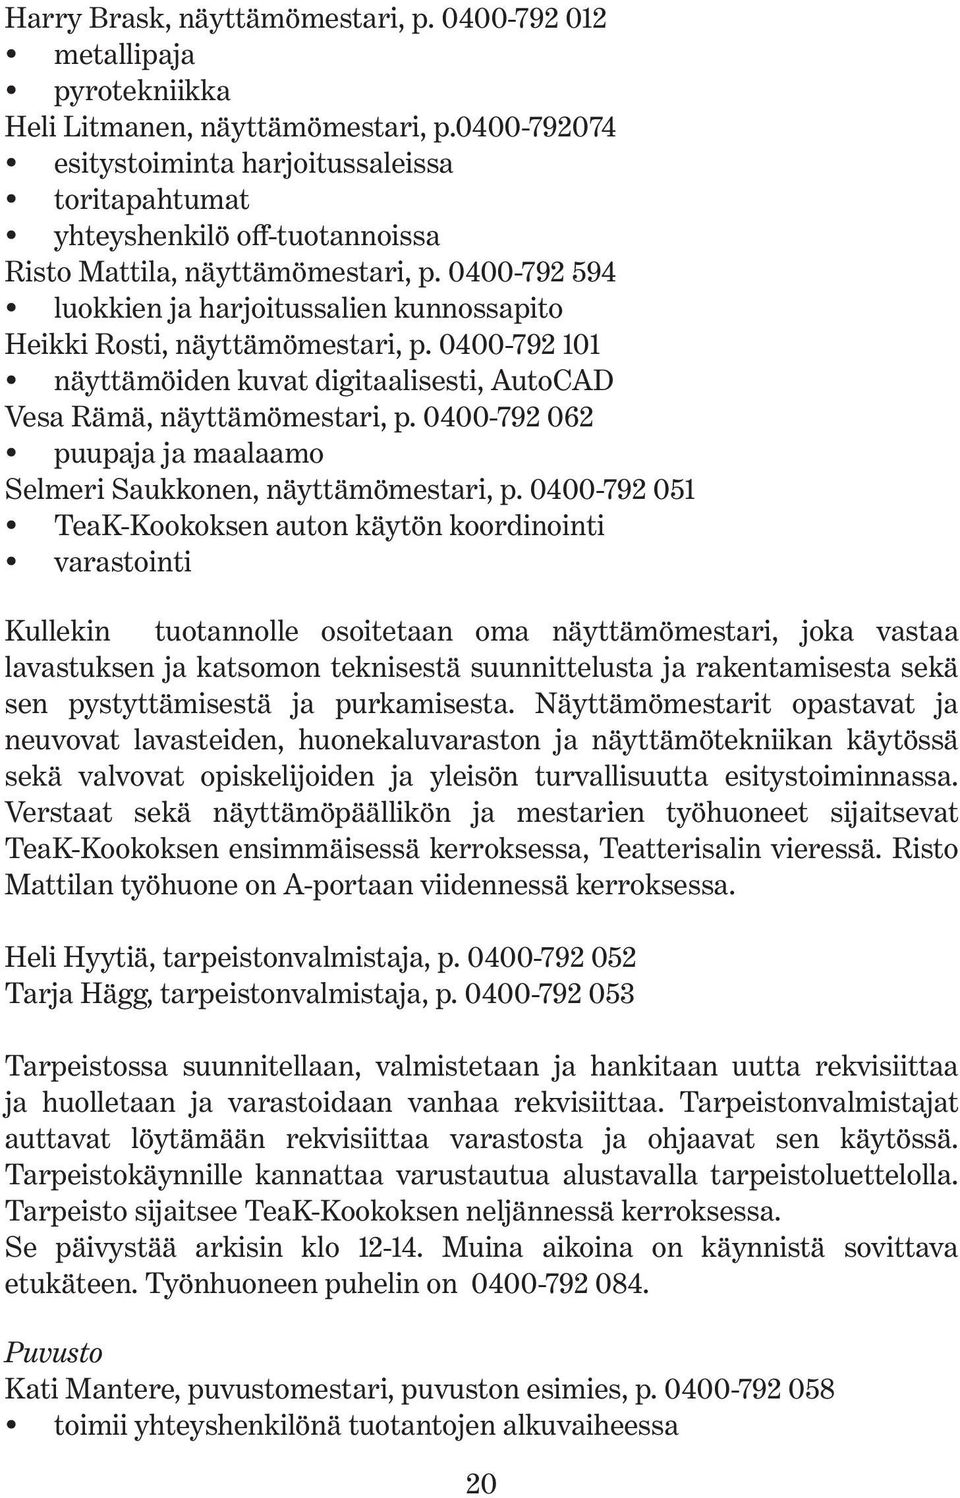 0400-792 594 luokkien ja harjoitussalien kunnossapito Heikki Rosti, näyttämömestari, p. 0400-792 101 näyttämöiden kuvat digitaalisesti, AutoCAD Vesa Rämä, näyttämömestari, p.